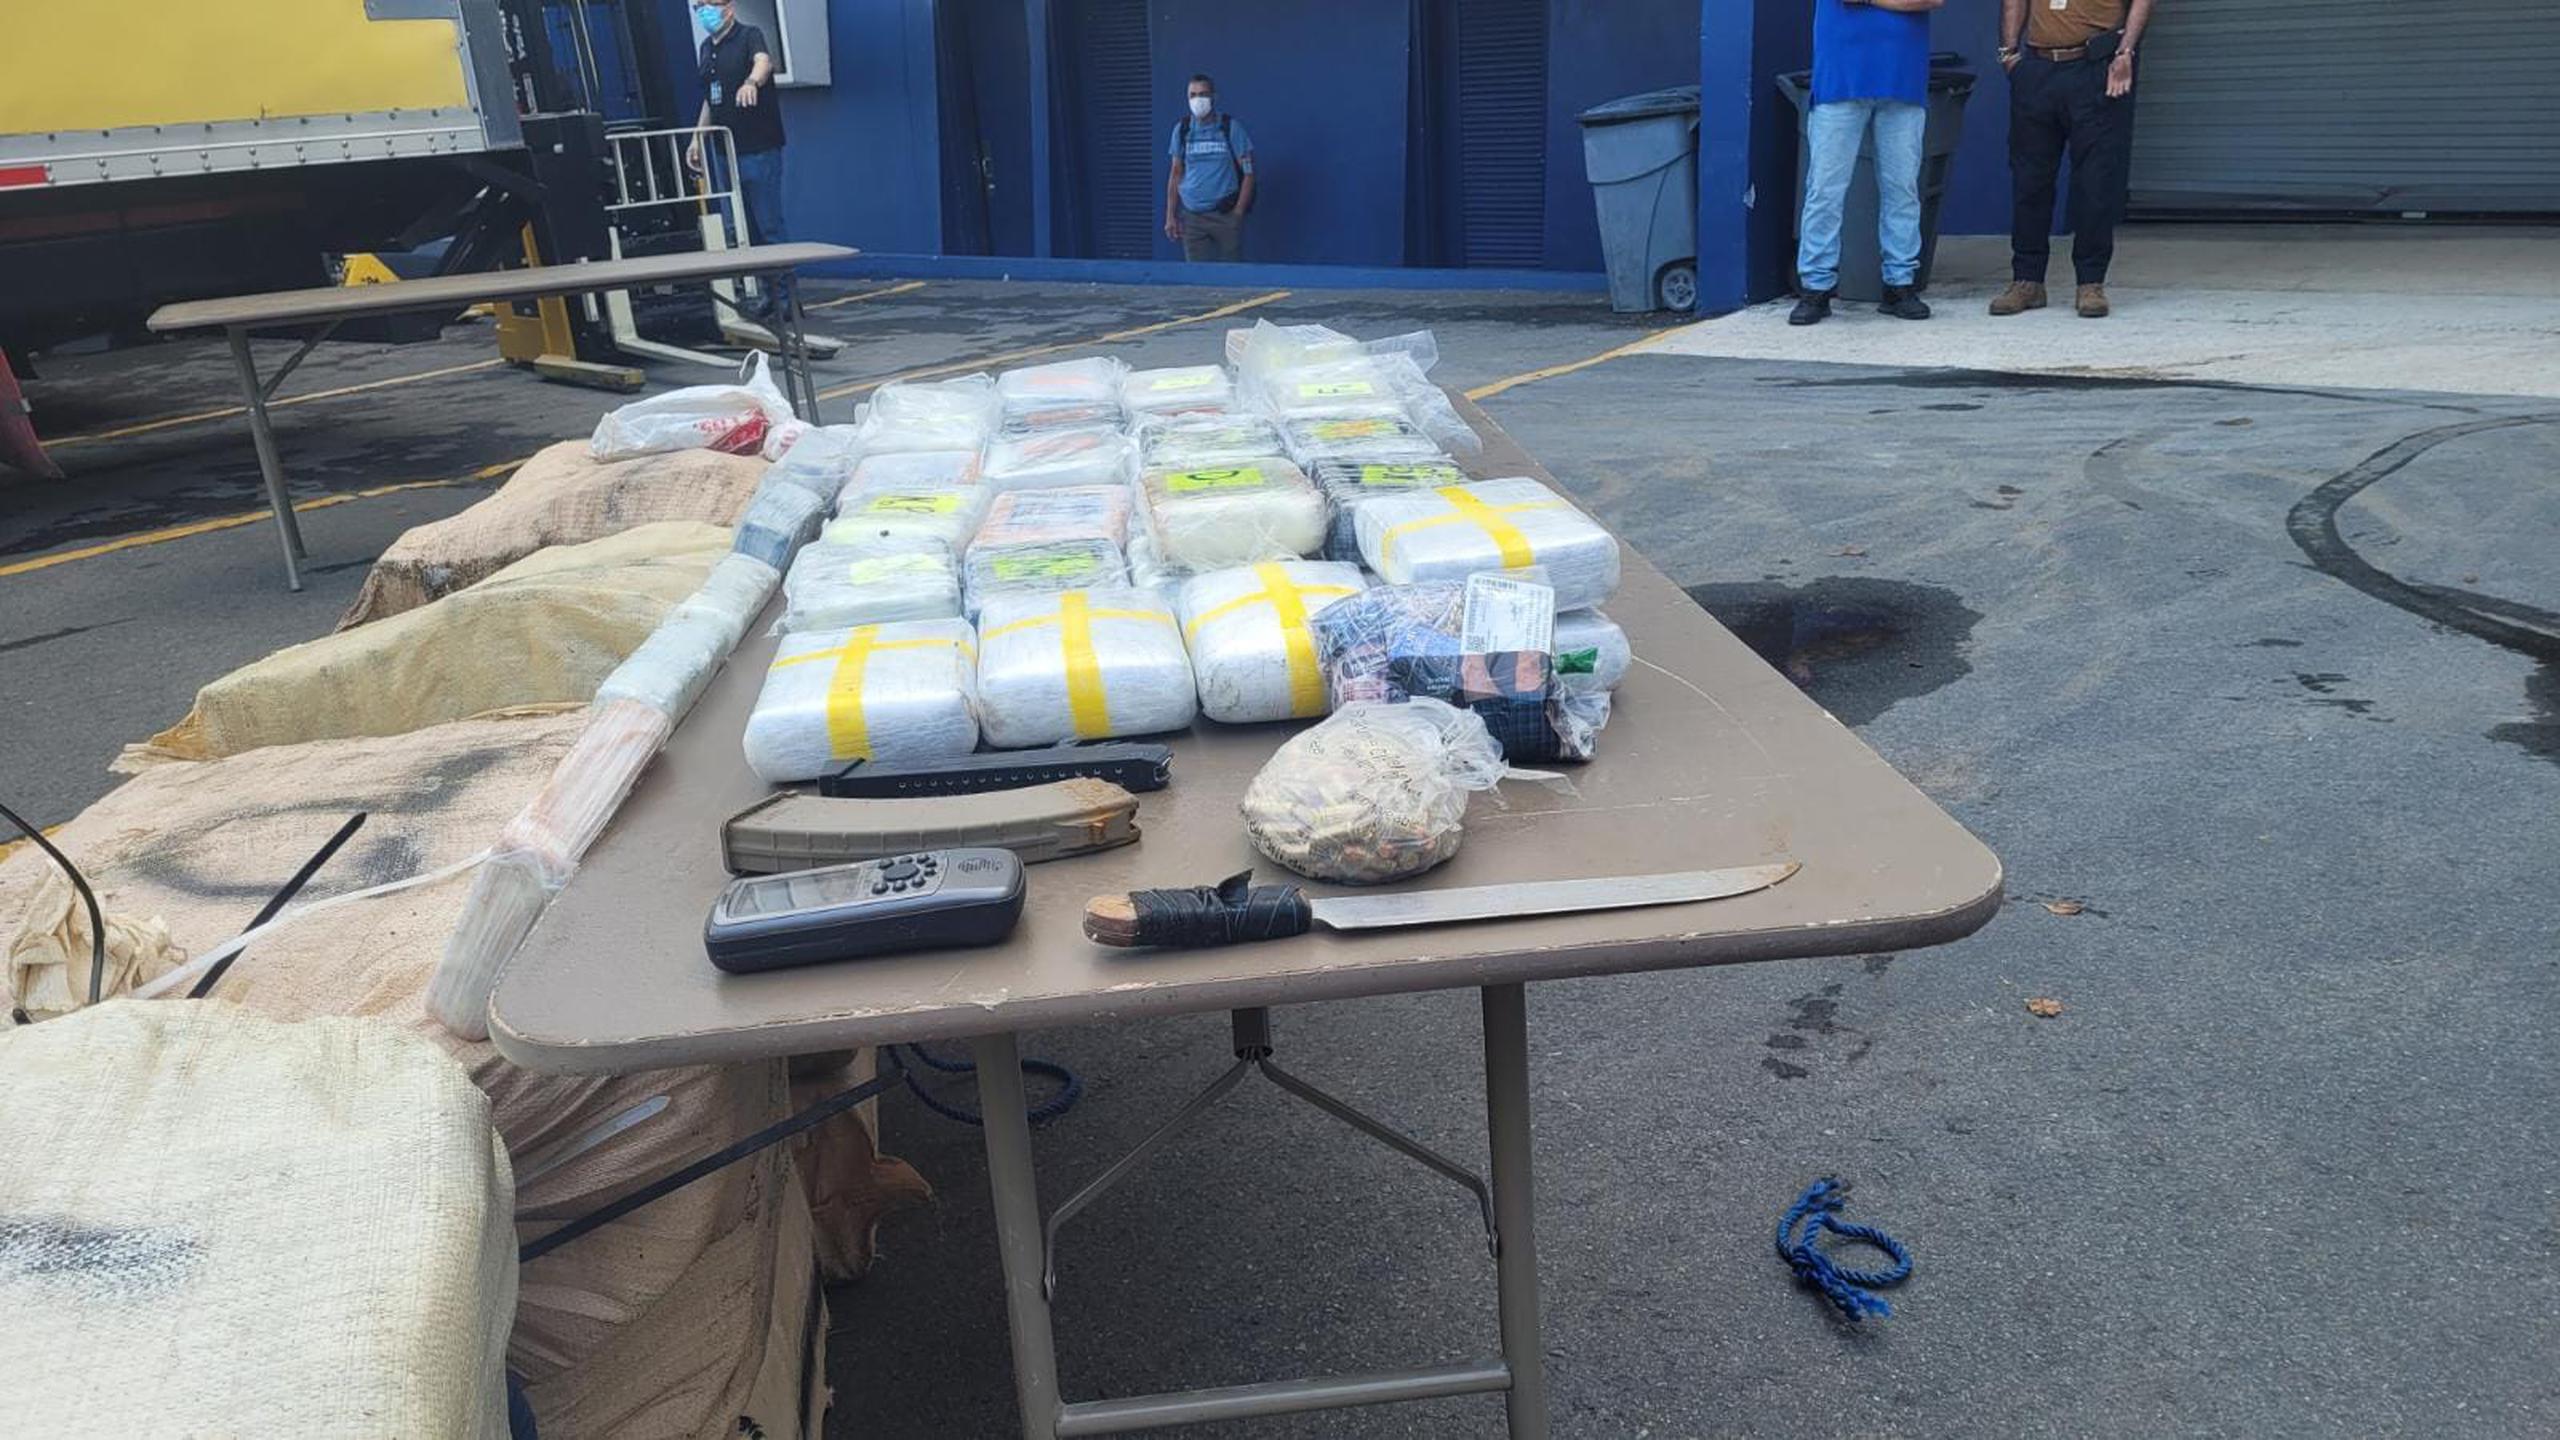 La cocaína fue ocupada por agentes del Negociado de Fuerzas Unidas de Rápida Acción en una embarcación de 25 pies de eslora en la costa de Dorado.